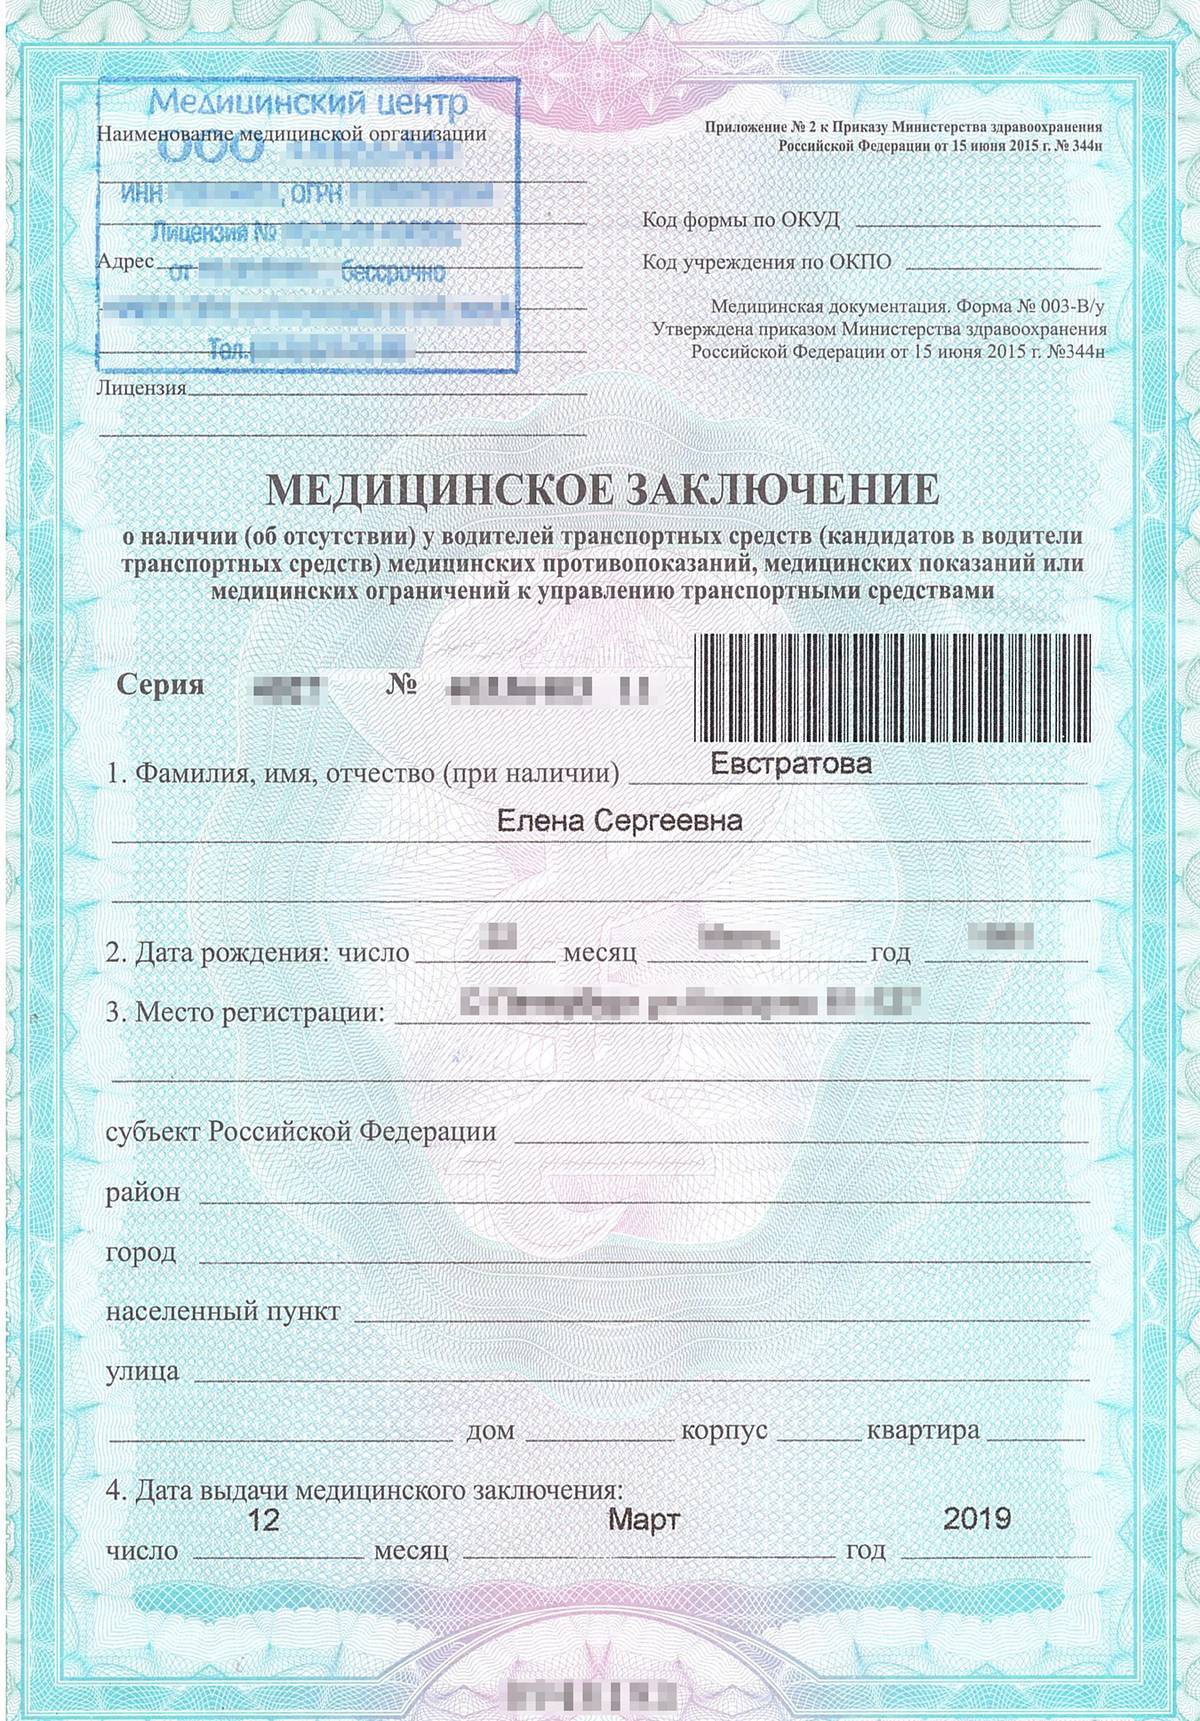 Справка на водительское удостоверение — медицинское заключение на право управления ТС